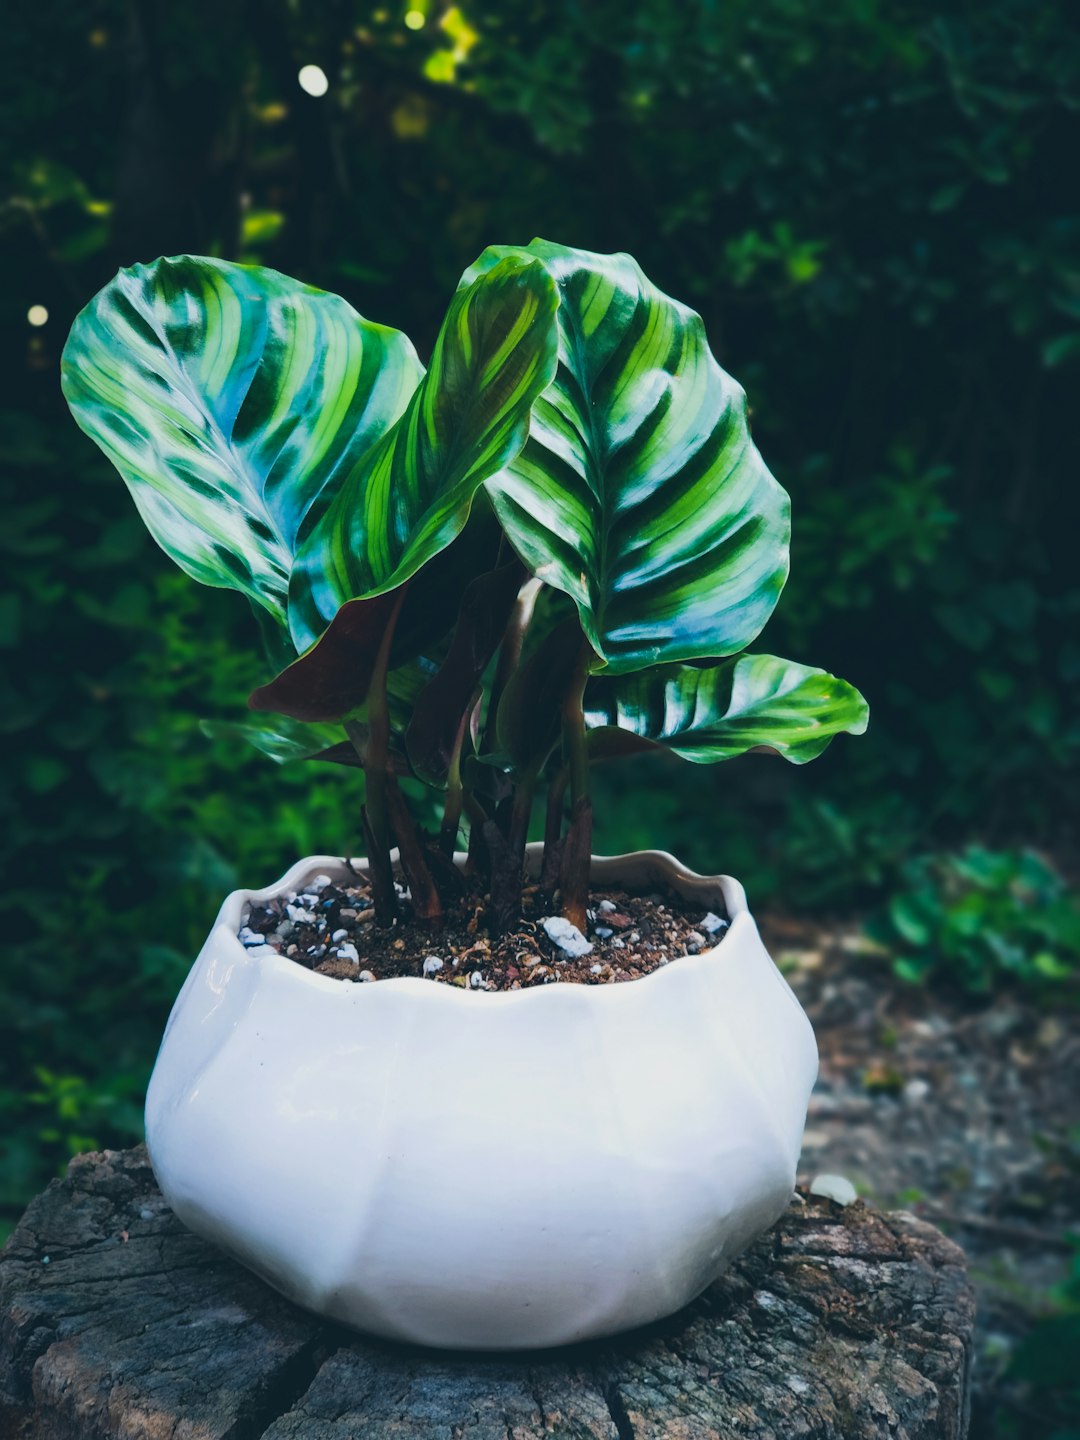 green plant in white ceramic pot